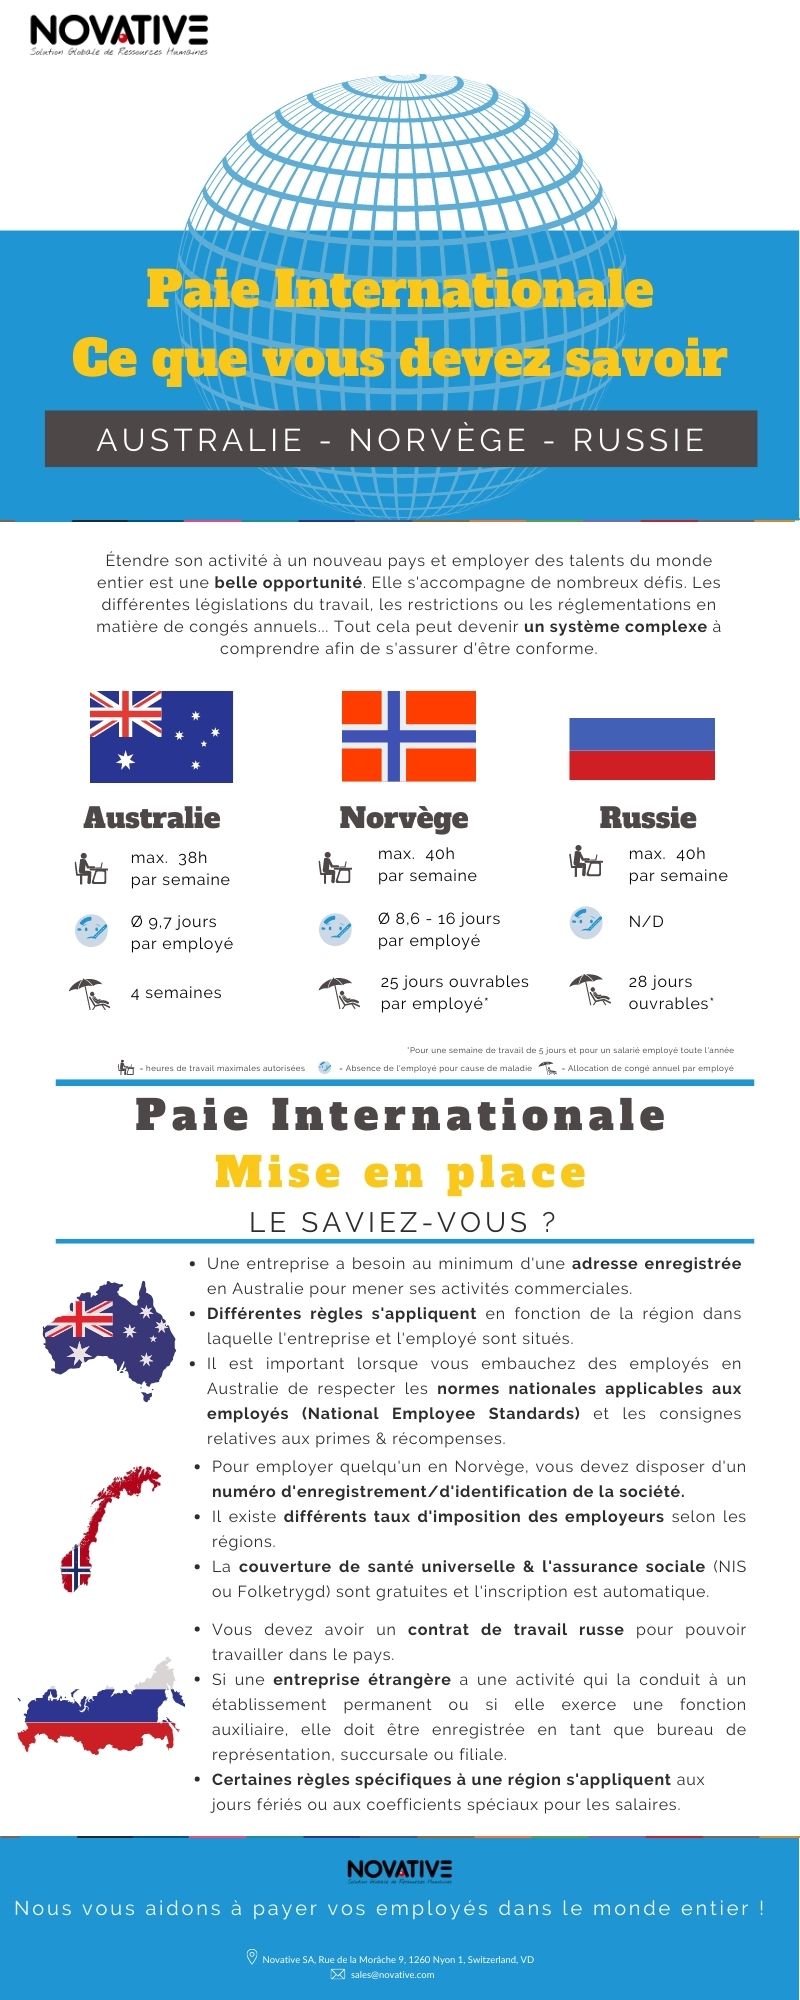 Infographie - Spécificités de la paie en Australie, Norvège & Russie